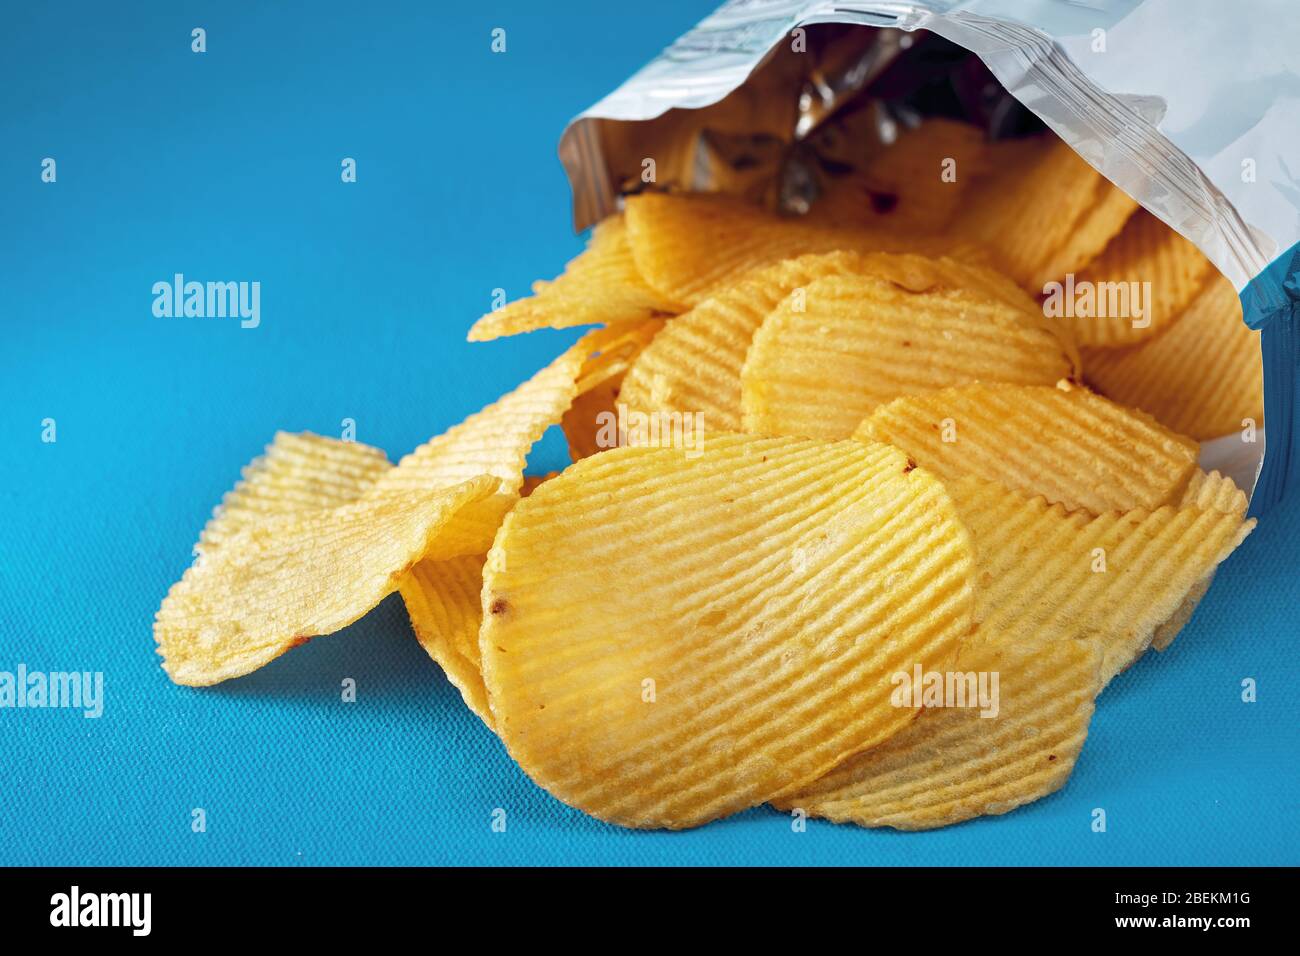 Kartoffelchips in einem Beutel oder einer Packung laufen auf dem Tisch aus. Makro Nahaufnahme. Stockfoto